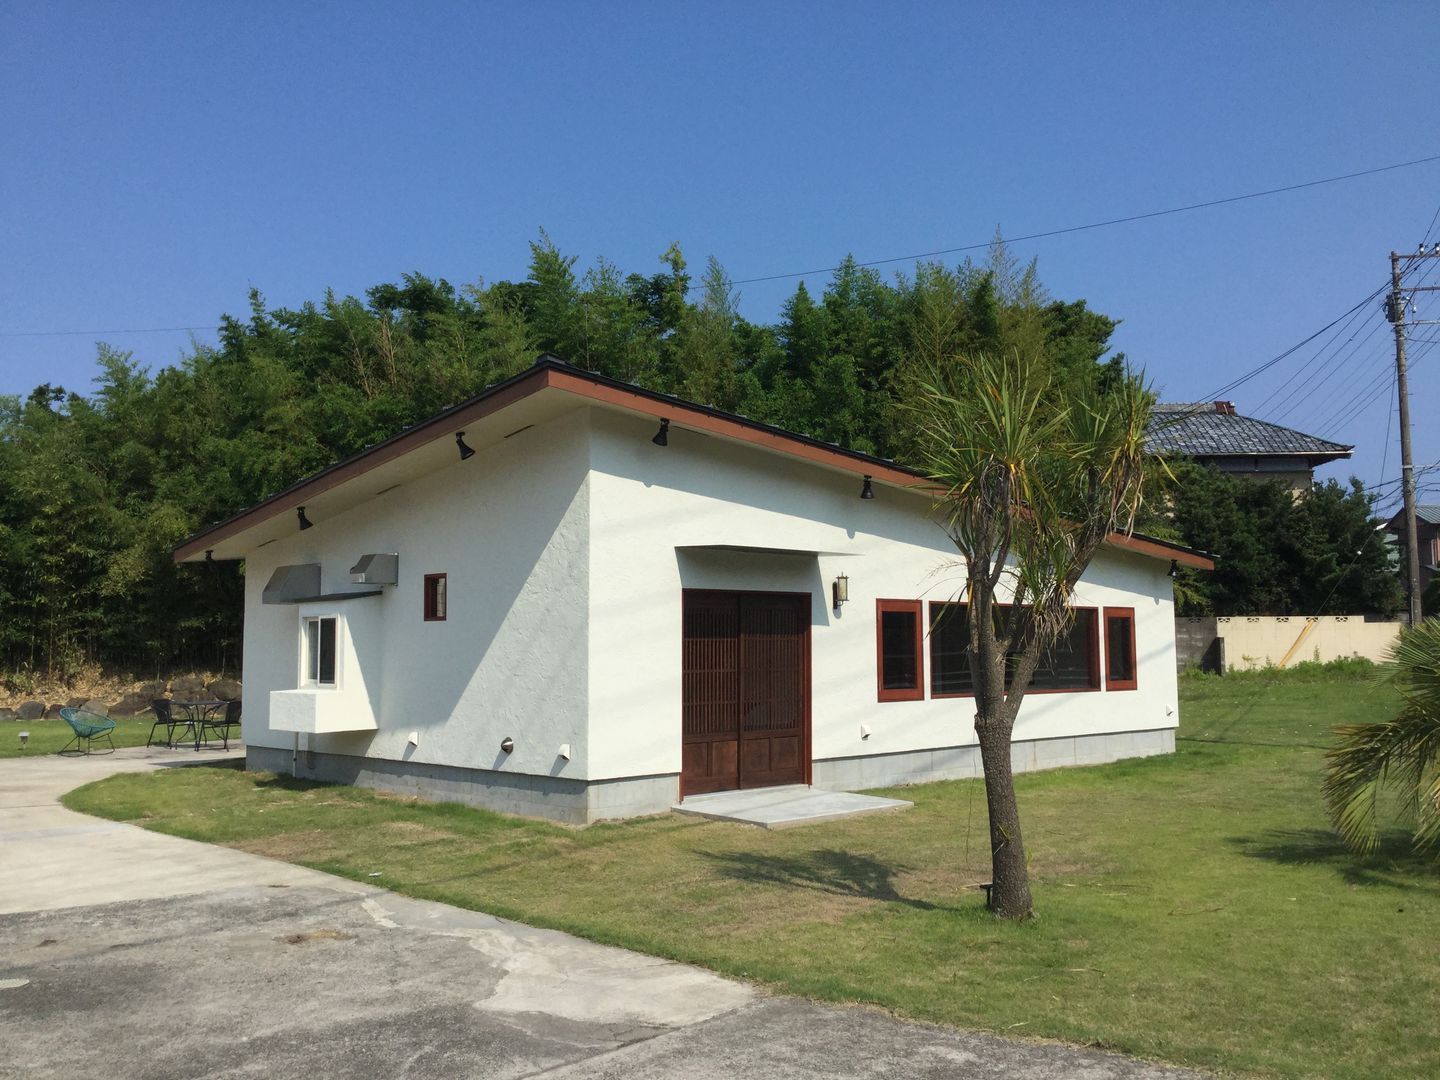 House in Torami, tai_tai STUDIO tai_tai STUDIO Rumah Gaya Rustic